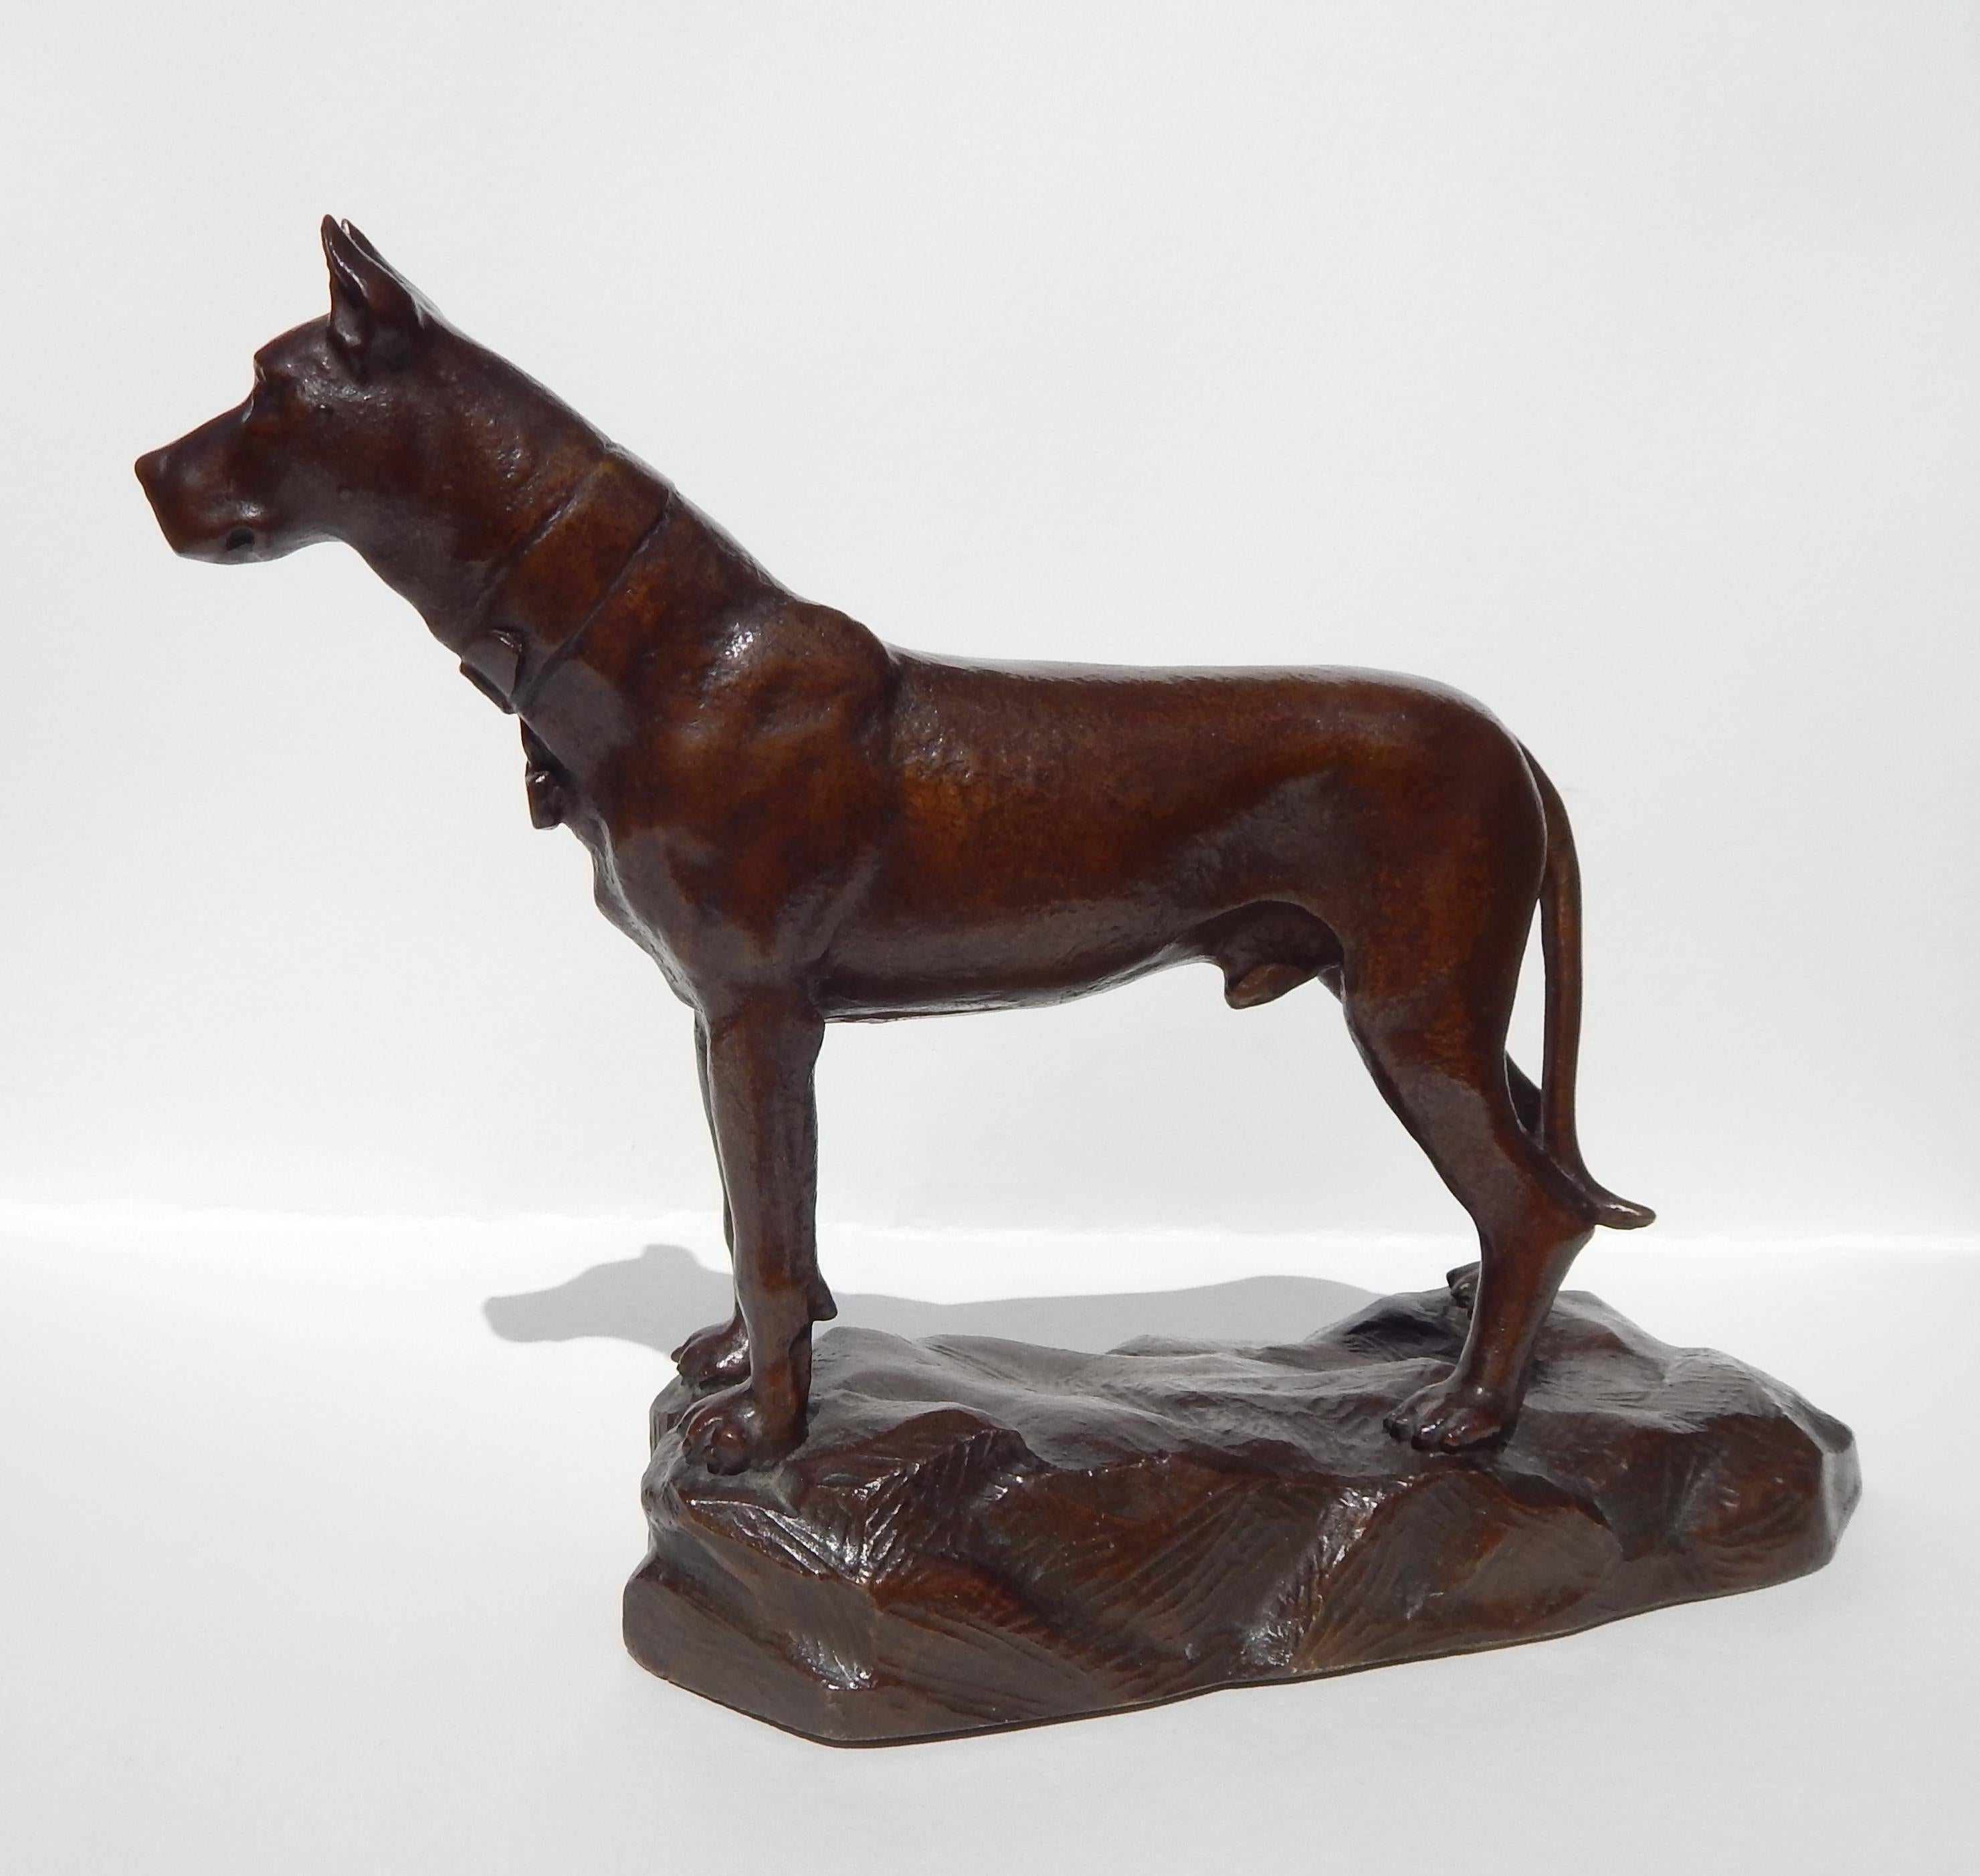 Ce merveilleux bronze d'Antonio de Fillipo (1900-1993) représente le royal dogue allemand.
Il porte une patine chaude et satinée et est en excellent état. Le chien mesure 10 pouces de haut, 13 pouces de long et 4 1/4 pouces de large.
La sculpture